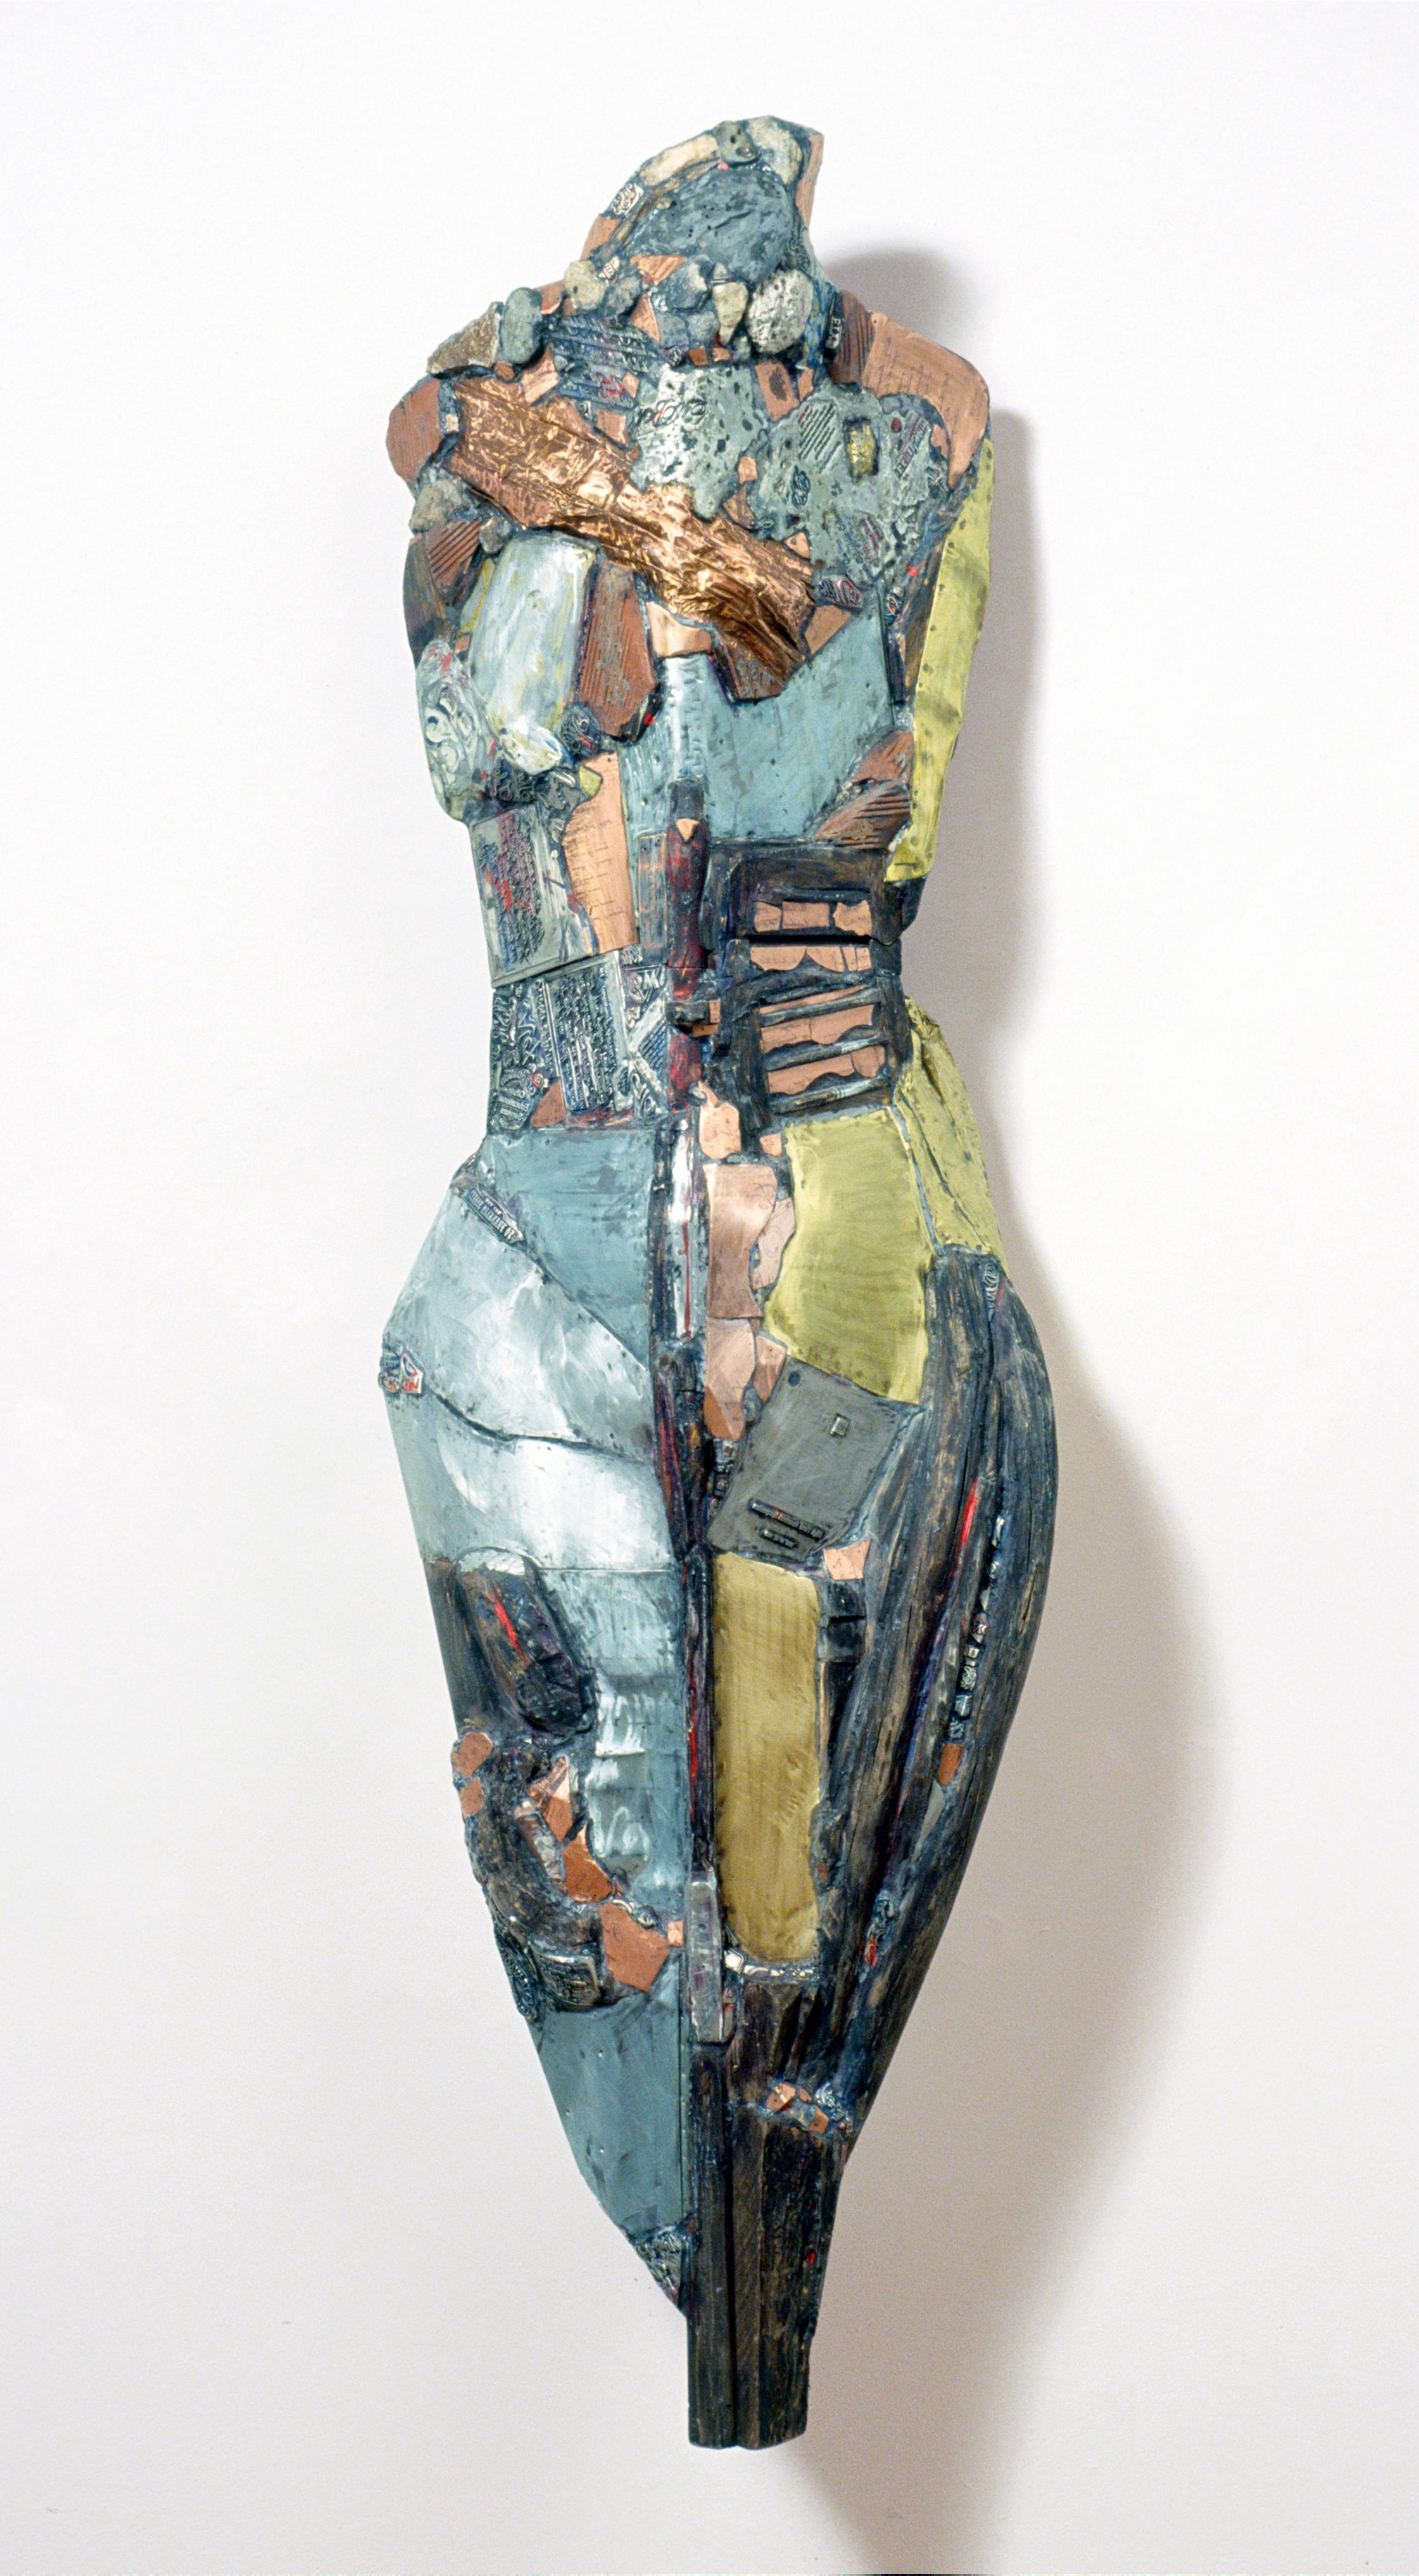 Linda Stein, Chevalier demain 542 - Sculpture contemporaine en bois et métal

Linda Stein a commencé sa série Knights of Protection après avoir été contrainte d'évacuer son studio du centre-ville de New York pendant un an après le 11 septembre 2001.